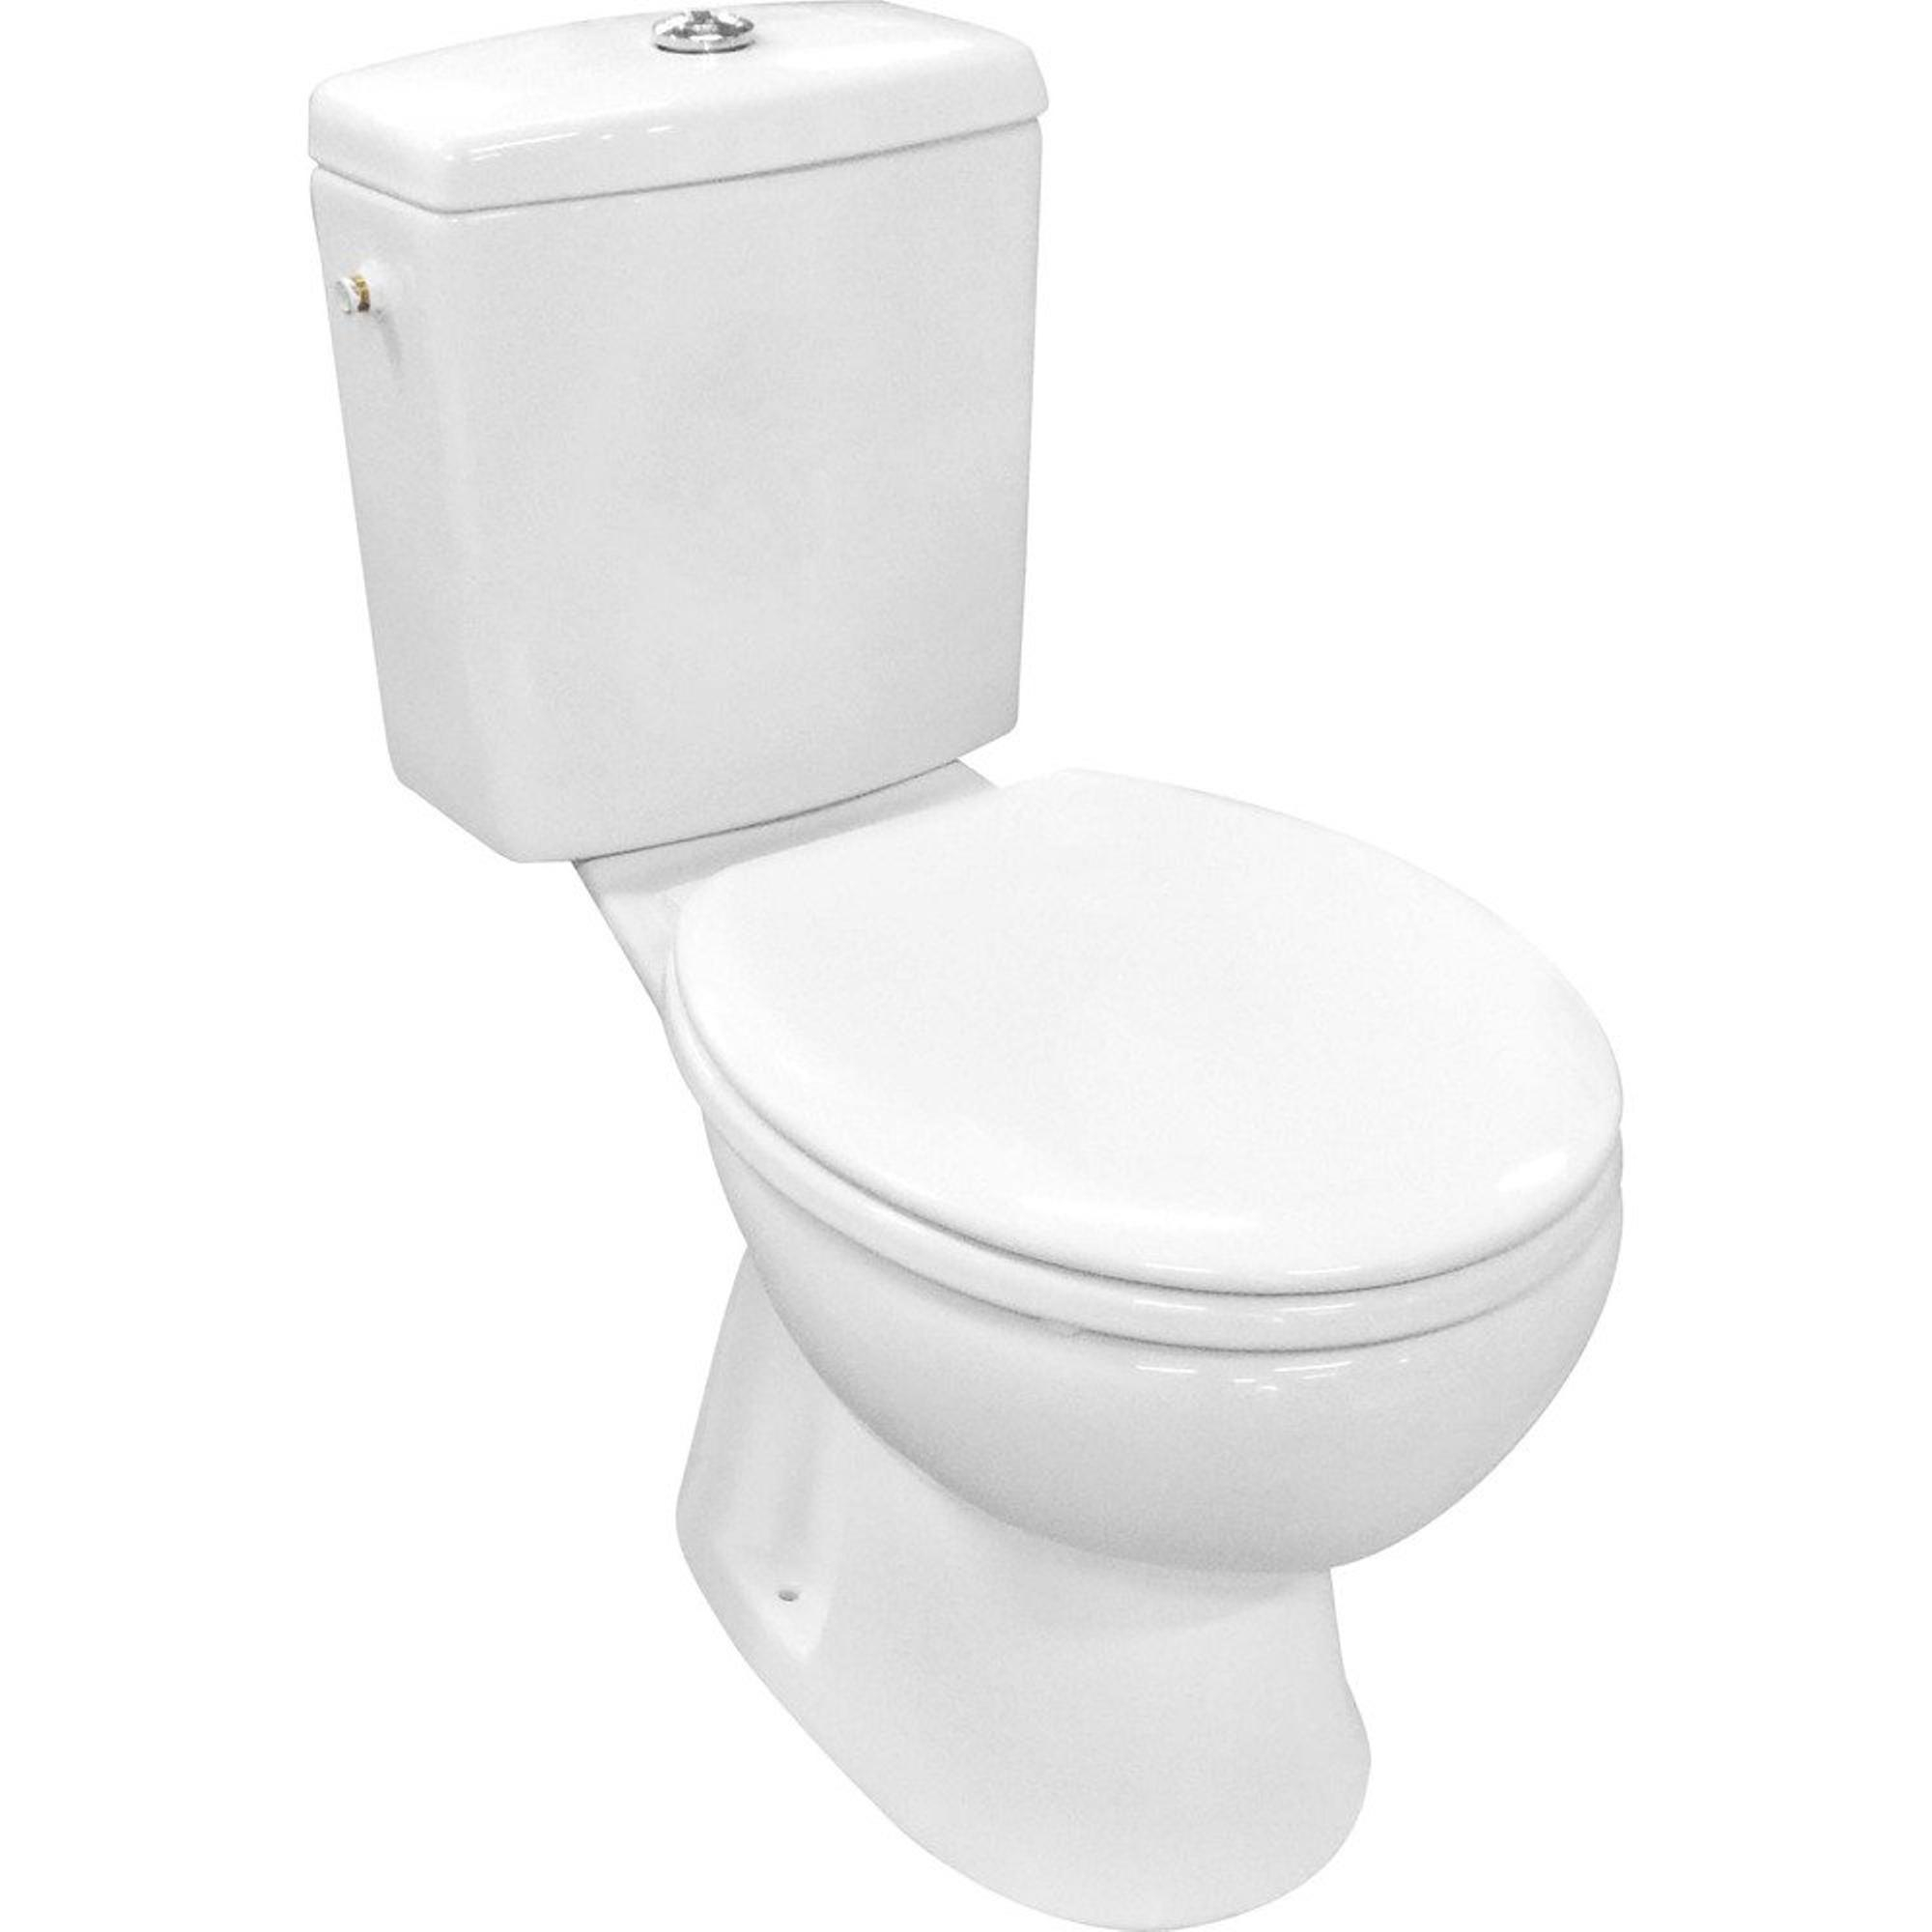 Blanc salle de bains wc eau de toilette raccord de tuyau de sortie